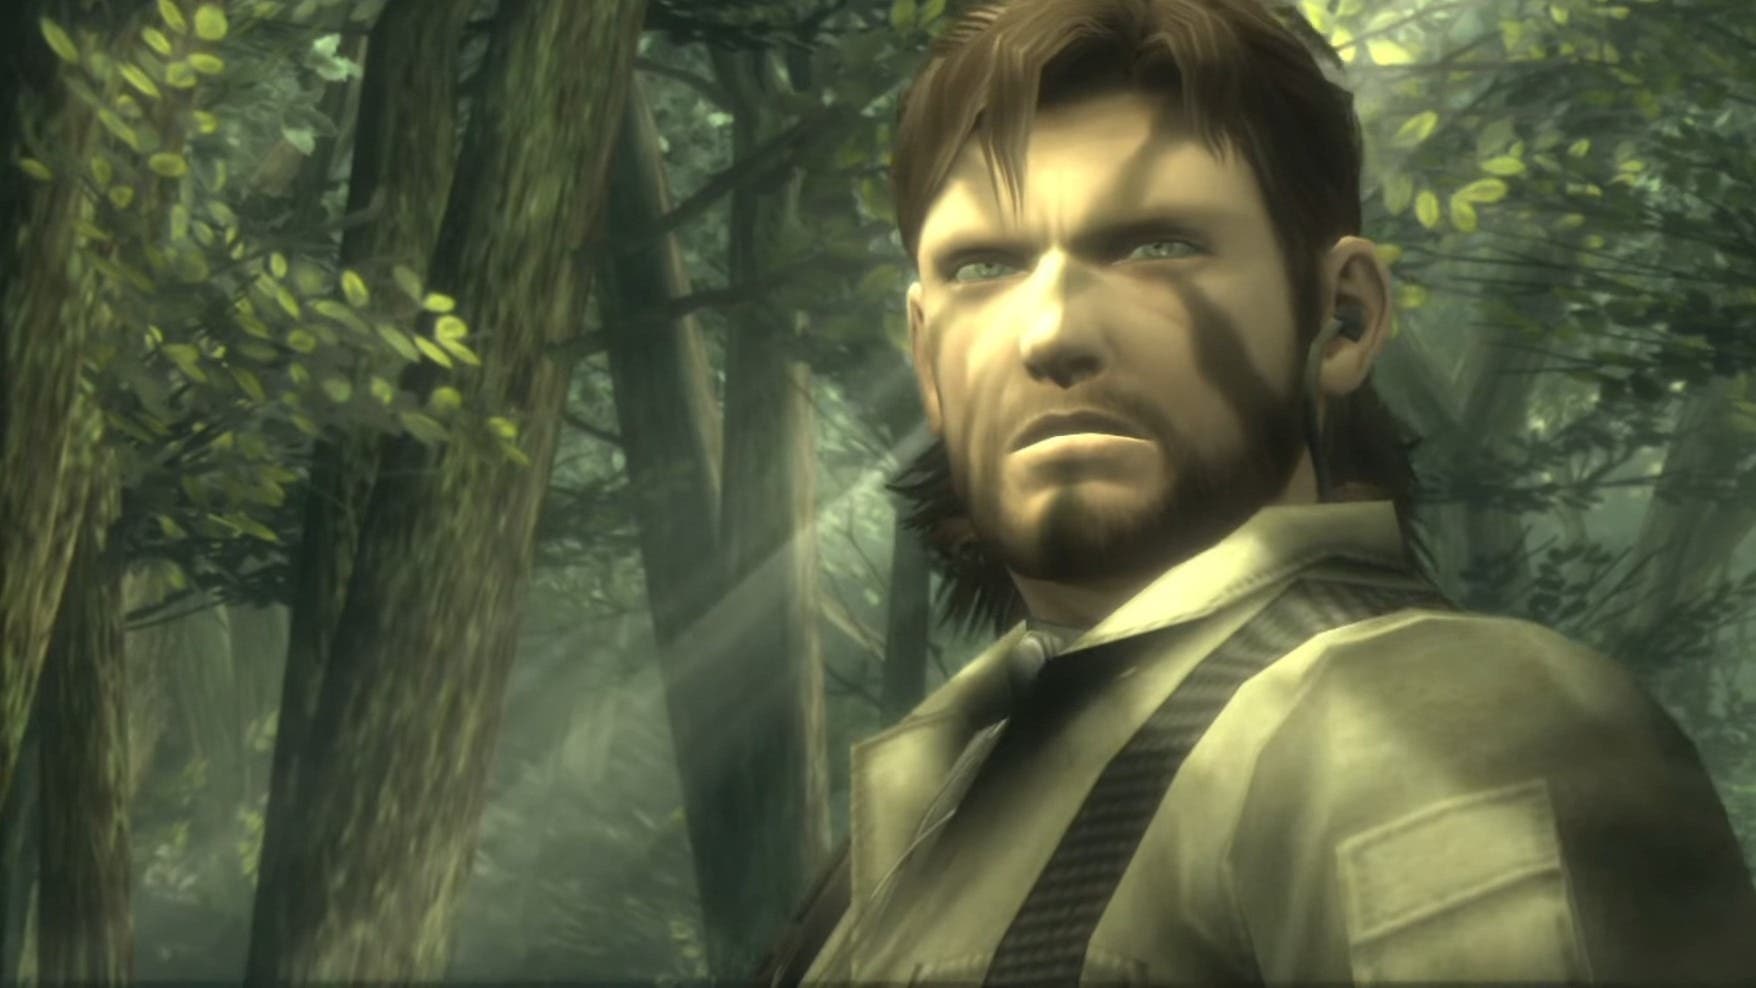 Metal Gear Solid: Master Collection Vol. 1 confirma estos errores y parches futuros para arreglarlos